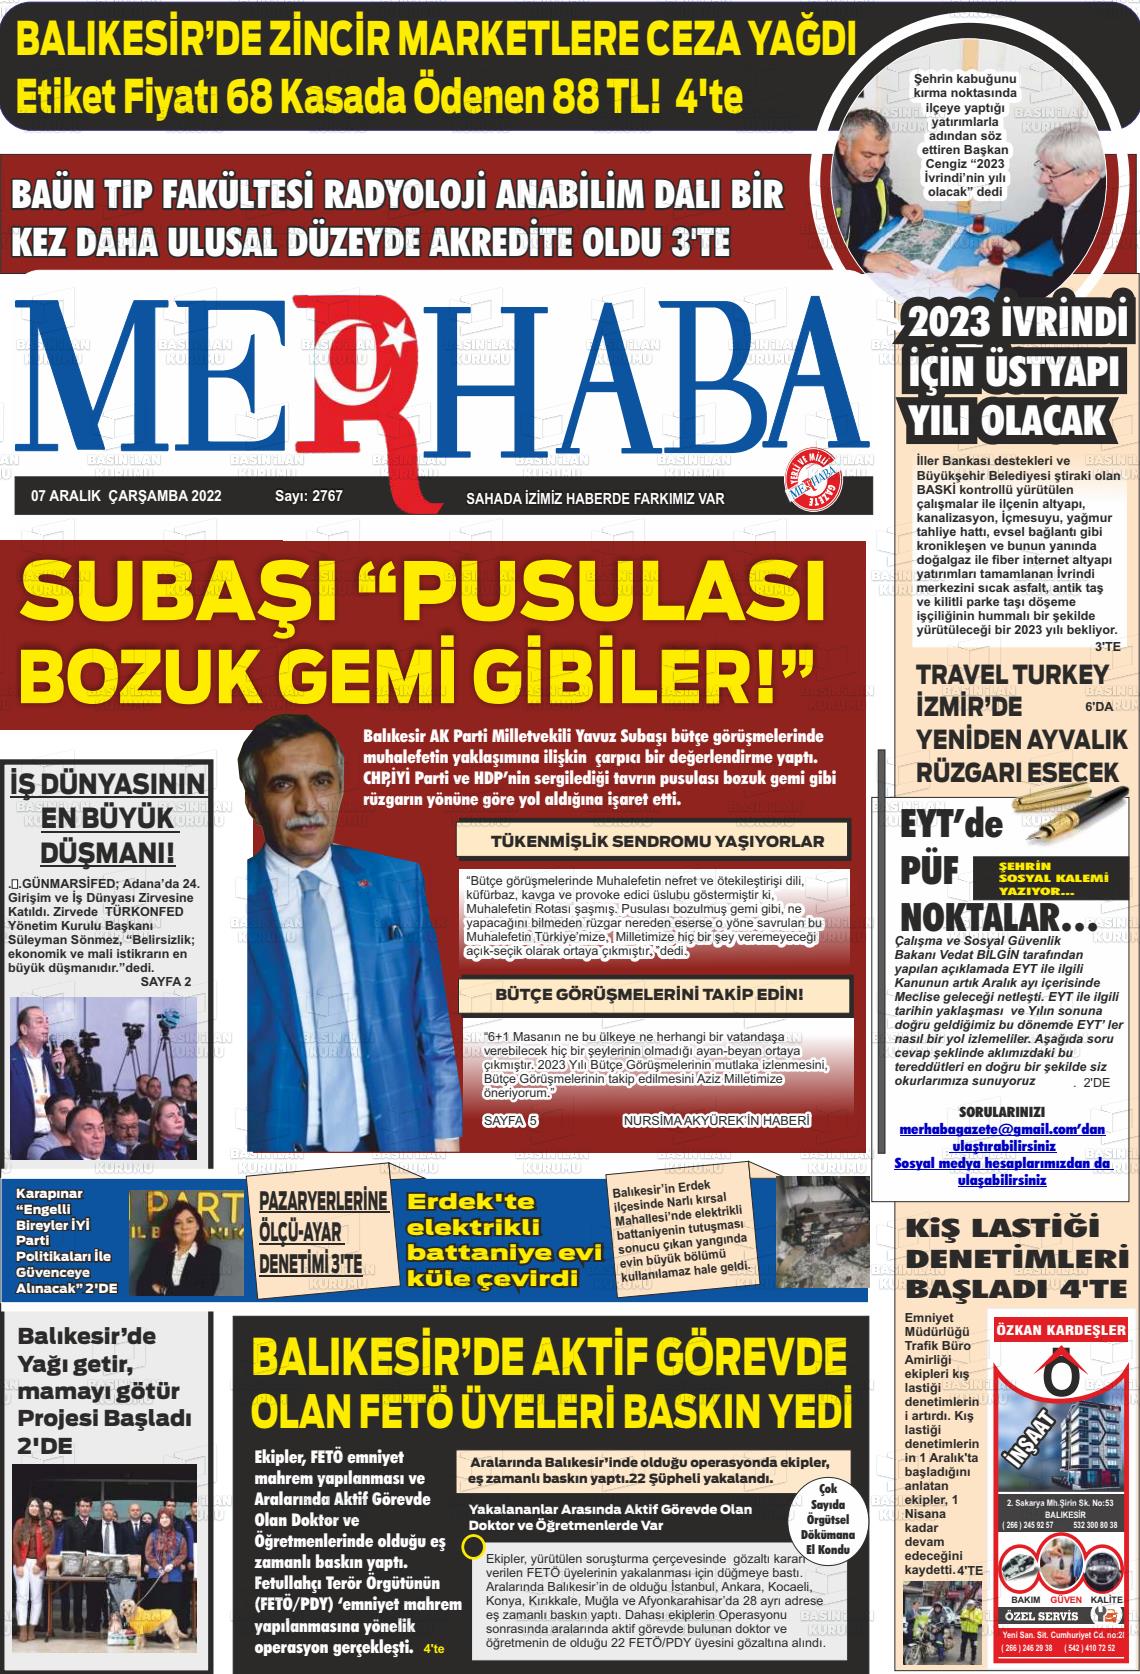 07 Aralık 2022 Büyükşehir Merhaba GAzetesi Gazete Manşeti